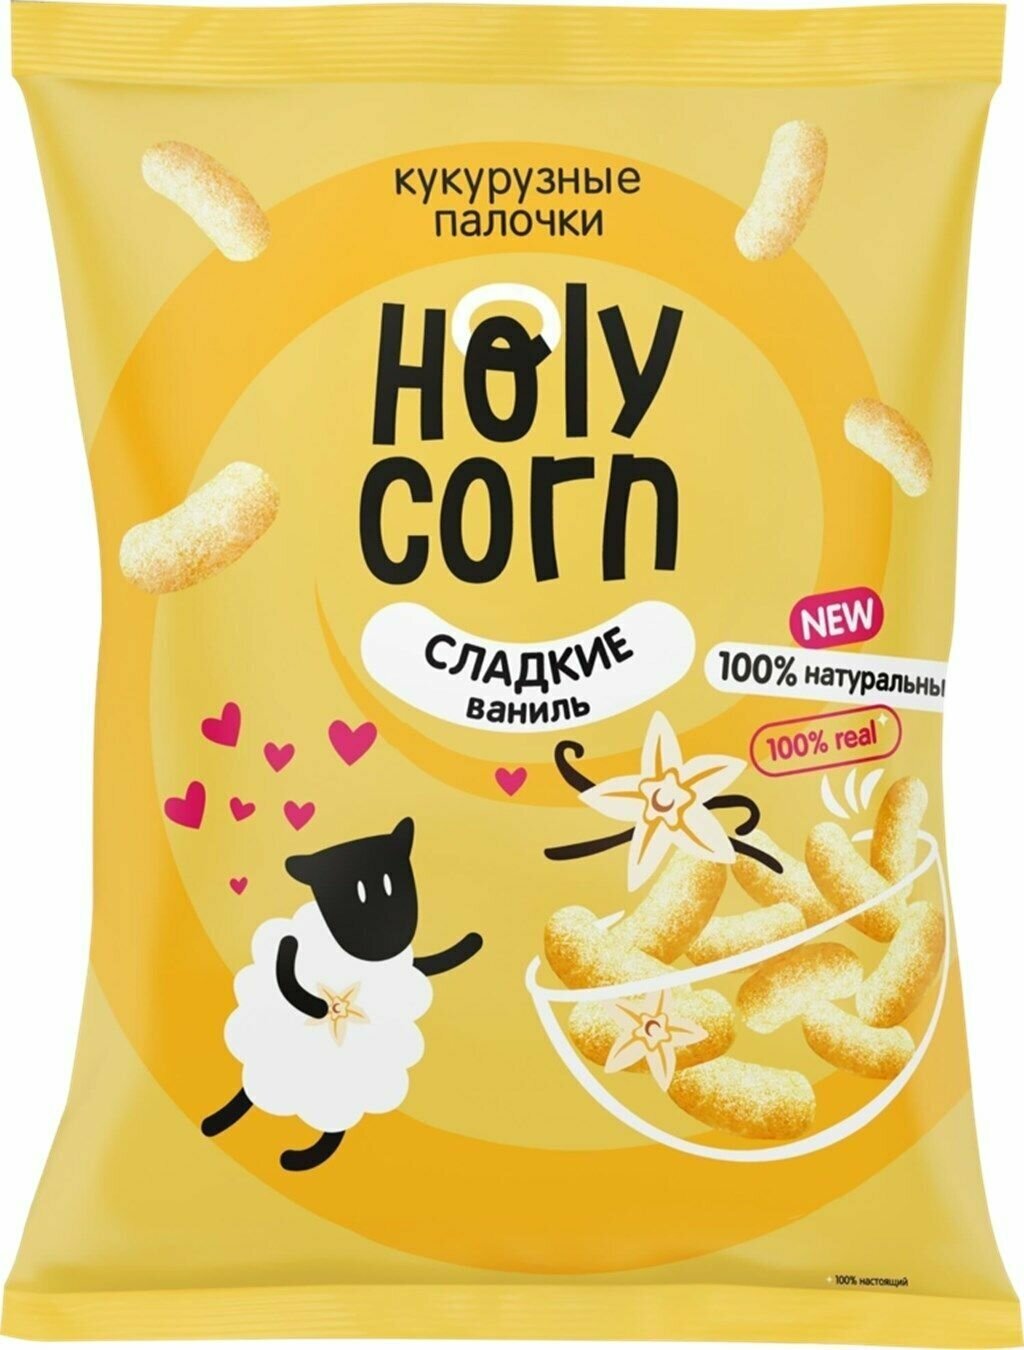 Палочки кукурузные HOLY CORN сладкие, 50 г - 10 шт.